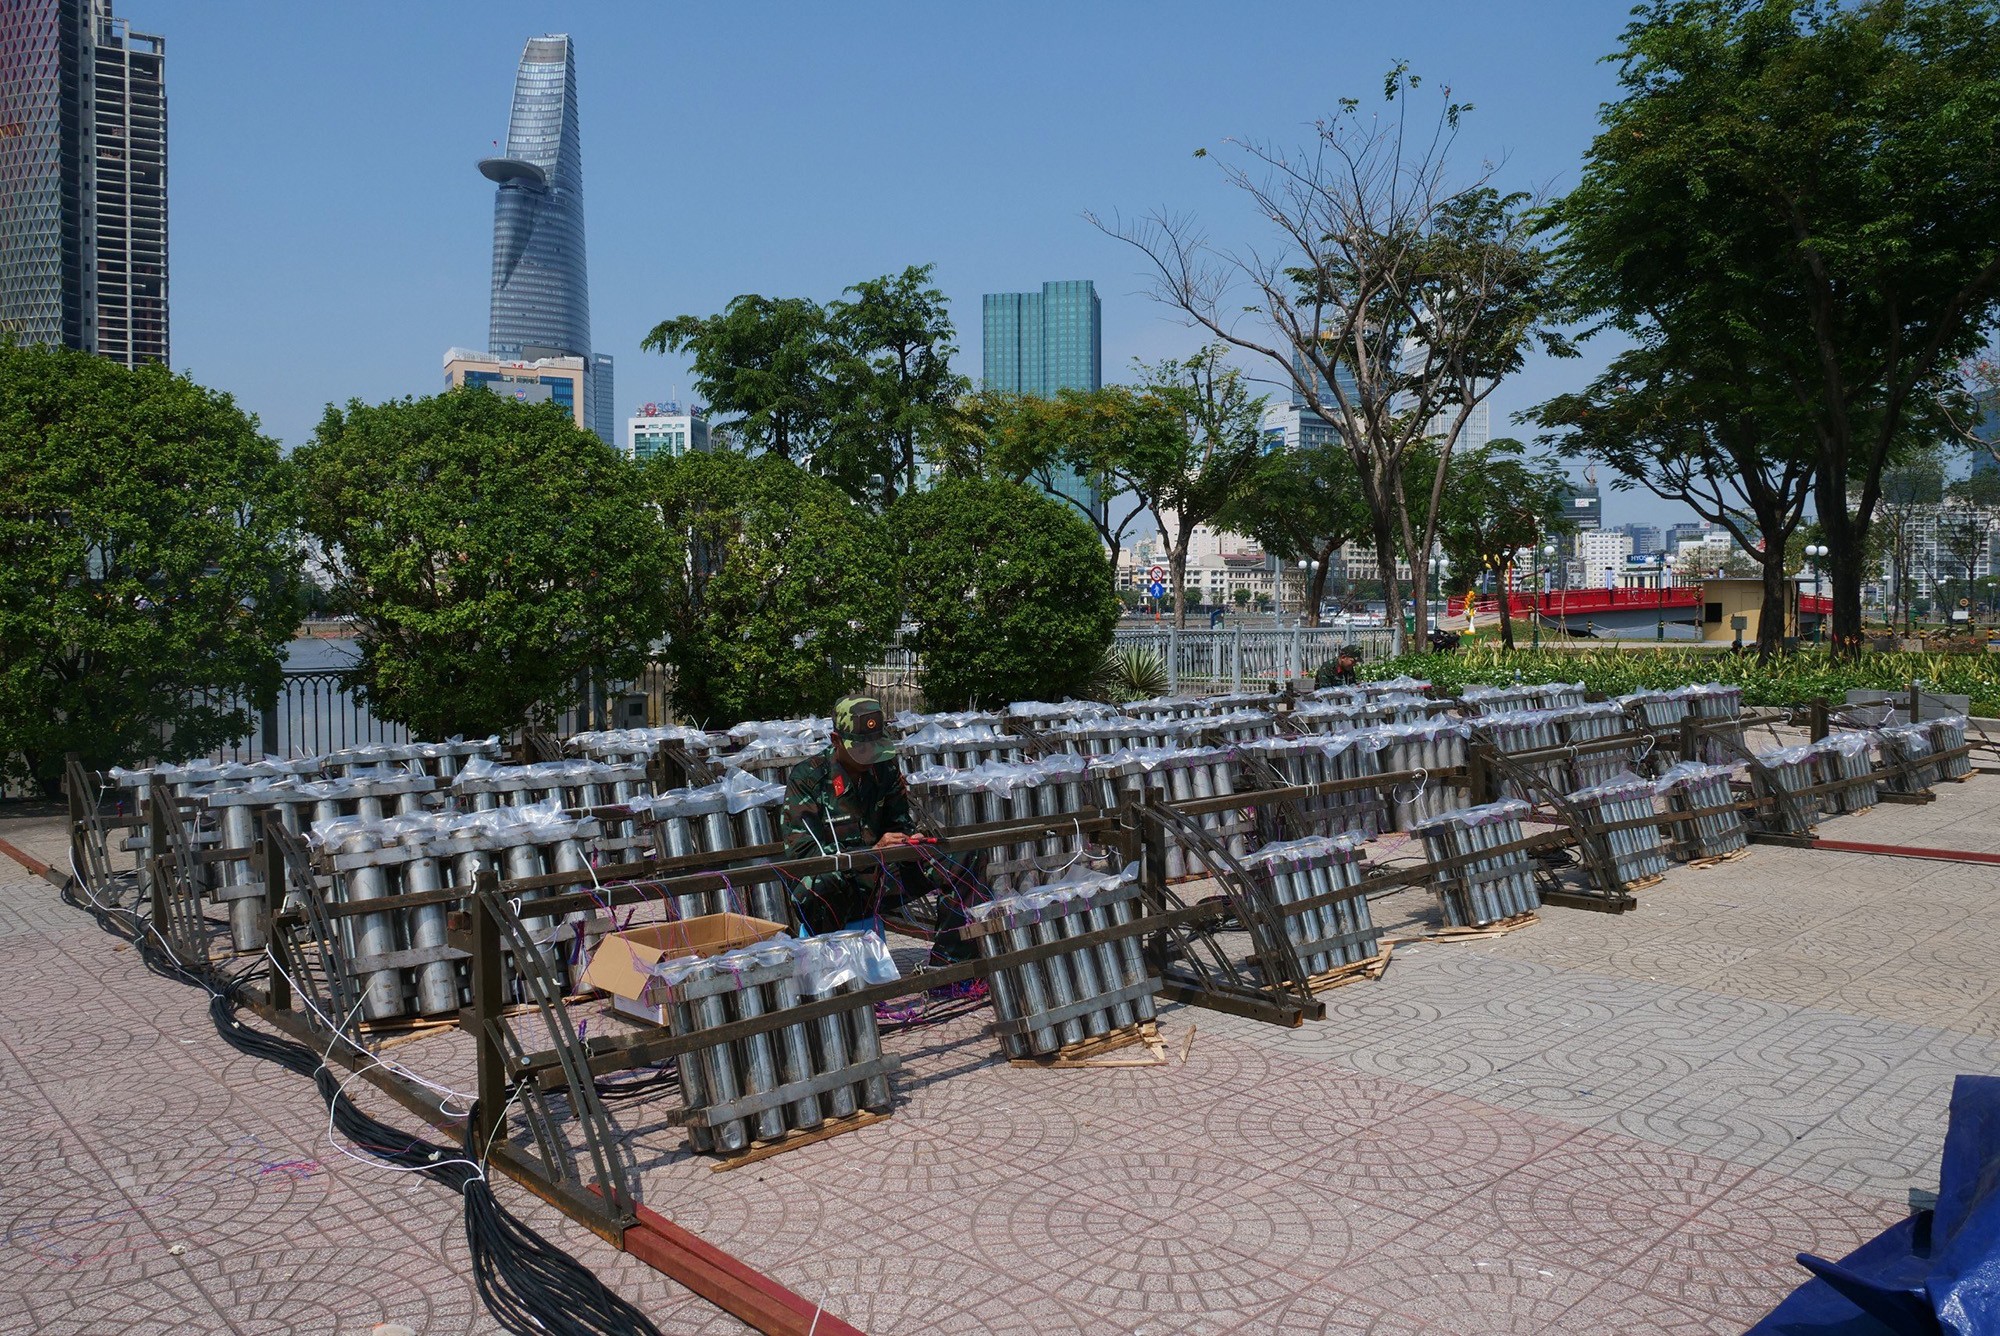 Ngày 9/2 (30 Tết), hàng chục cán bộ, chiến sĩ thuộc Bộ Tư lệnh TP.HCM đang triển khai lắp đặt các dàn pháo hoa được bố tại khu vực công viên nóc hầm vượt sông Sài Gòn, TP Thủ Đức.